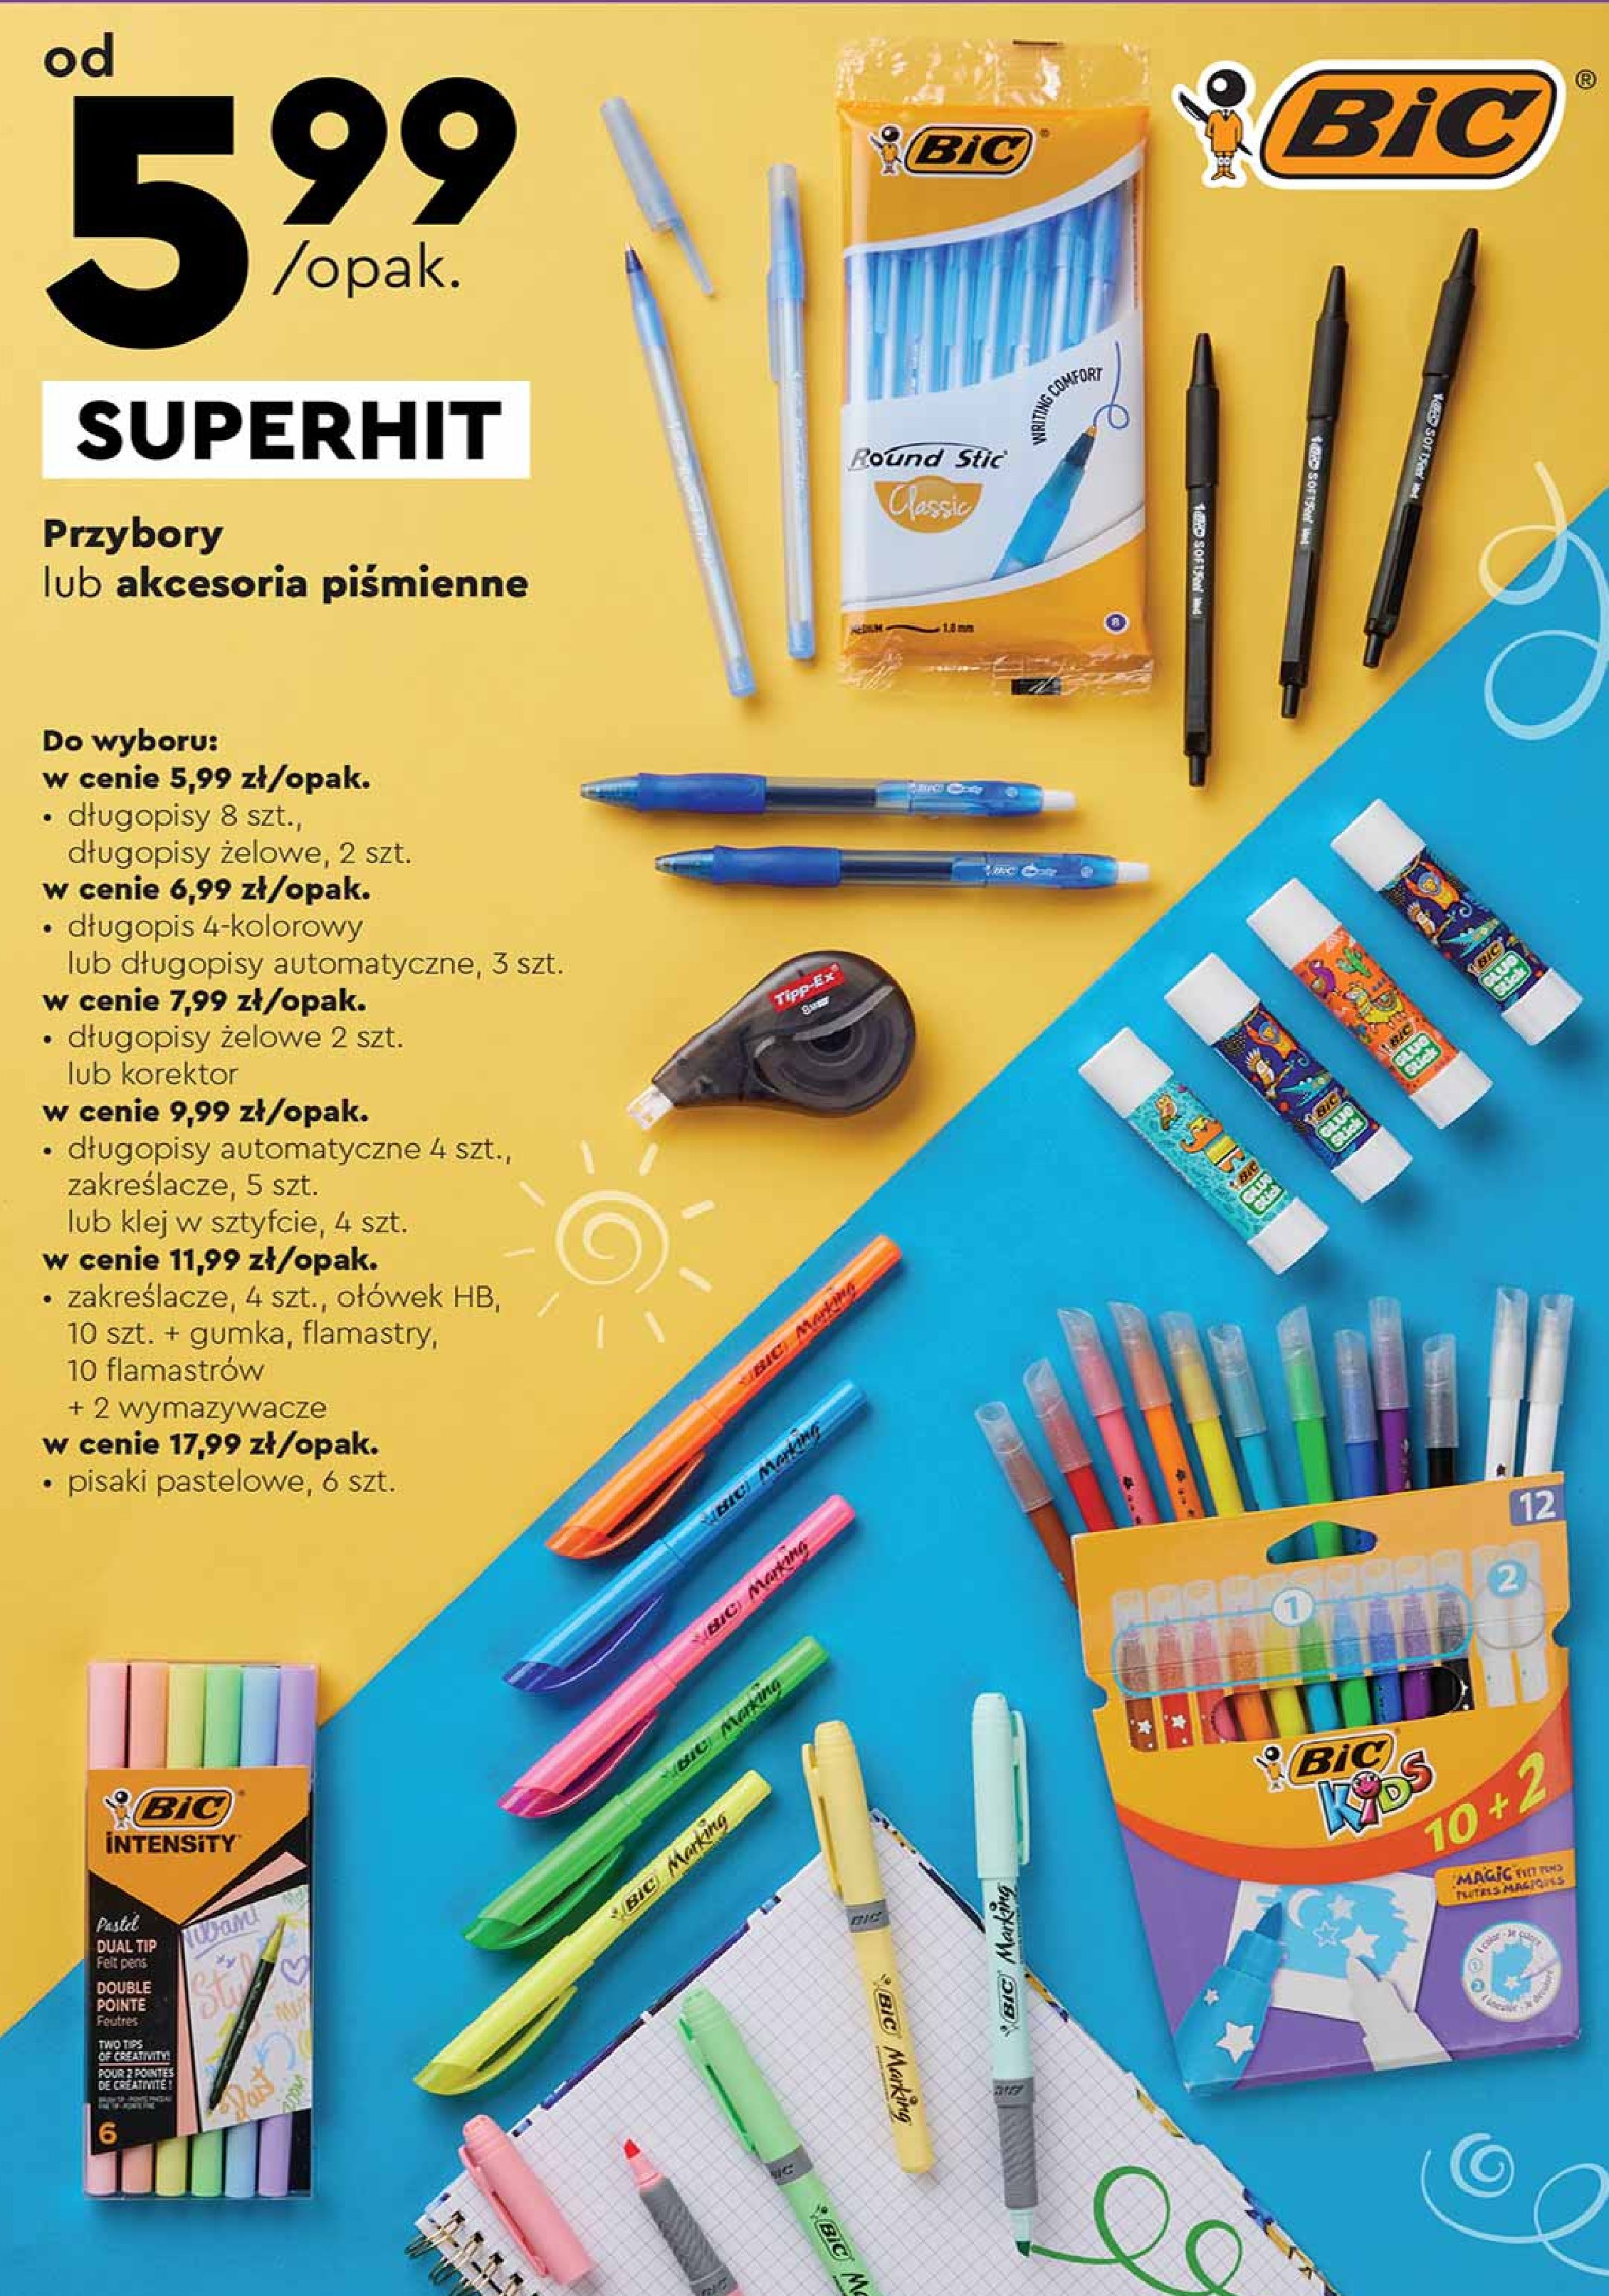 Długopis 4 colours grip czterokolorowy Bic 4 colours promocja